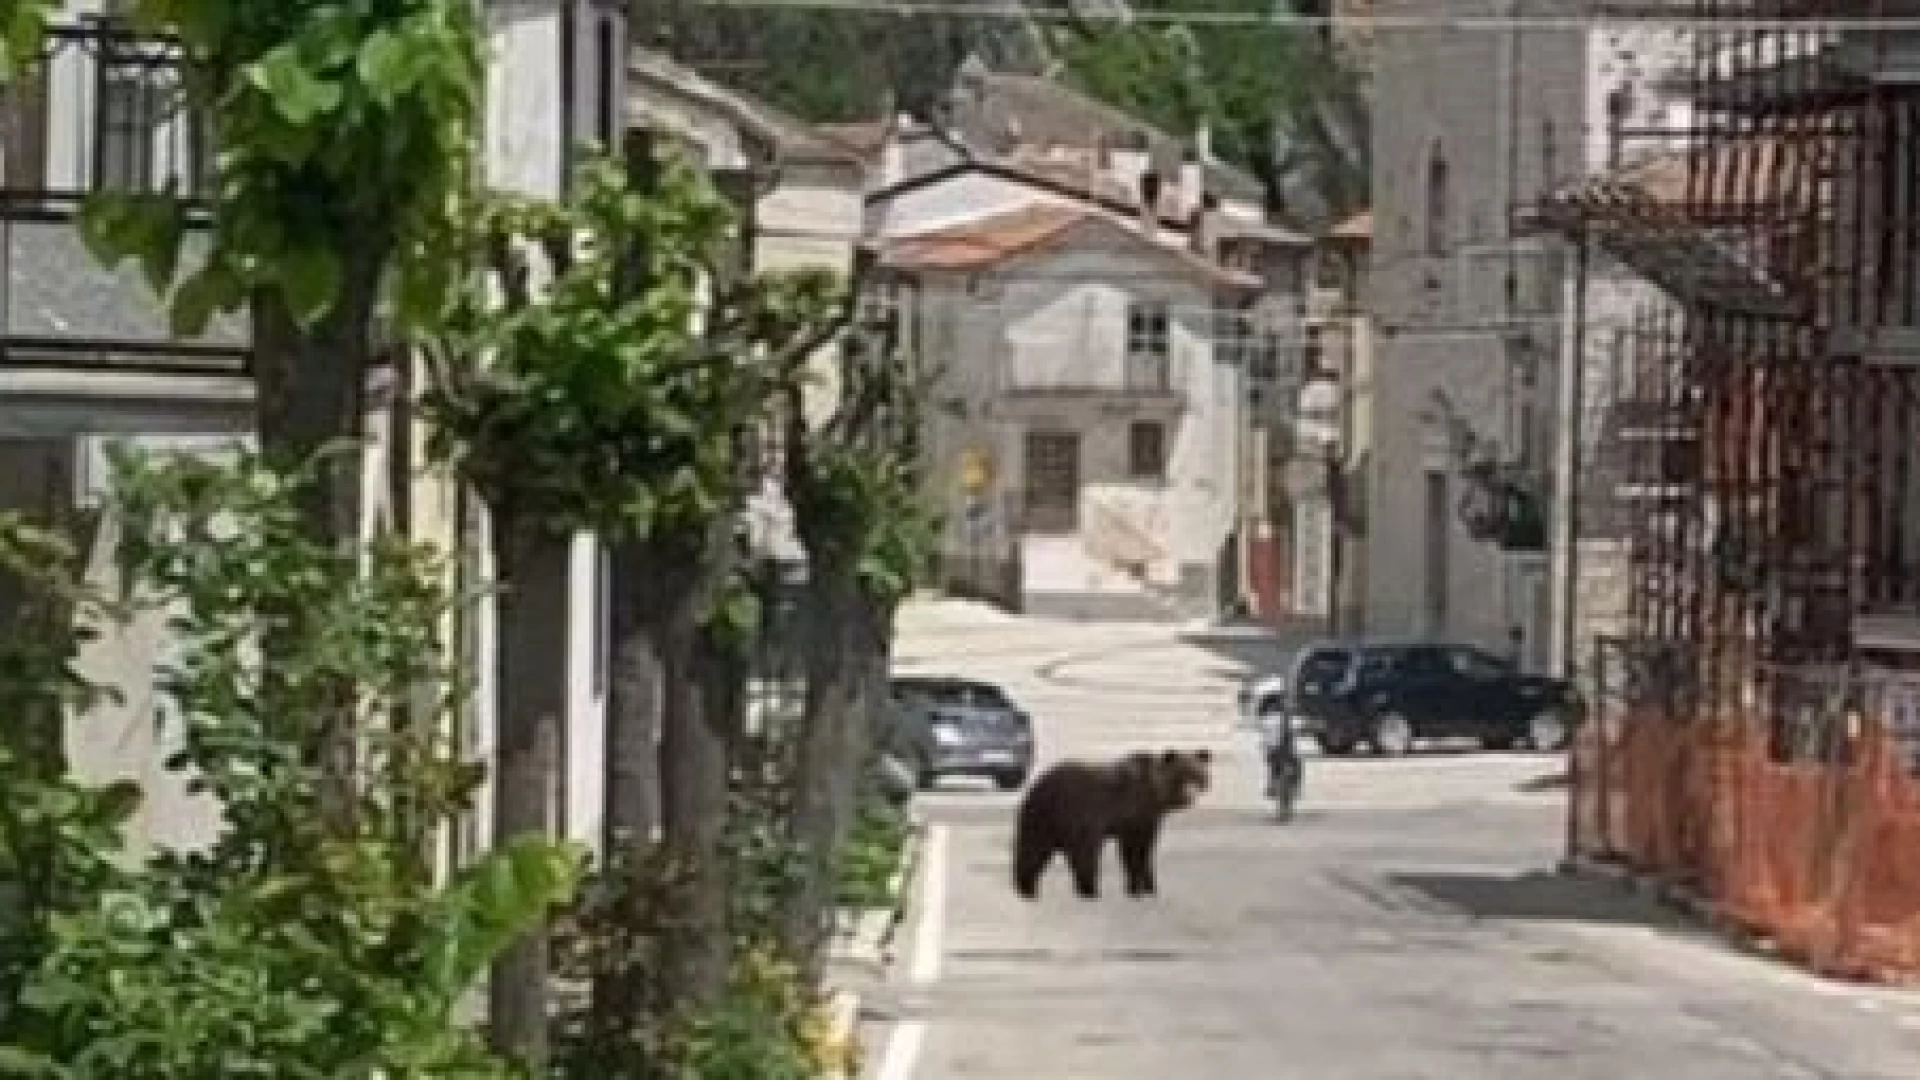 Pizzoferrato: Juan Carrito , l’orso più famoso del web, avvistato in pieno centro cittadino quest’oggi. La foto-notizia.